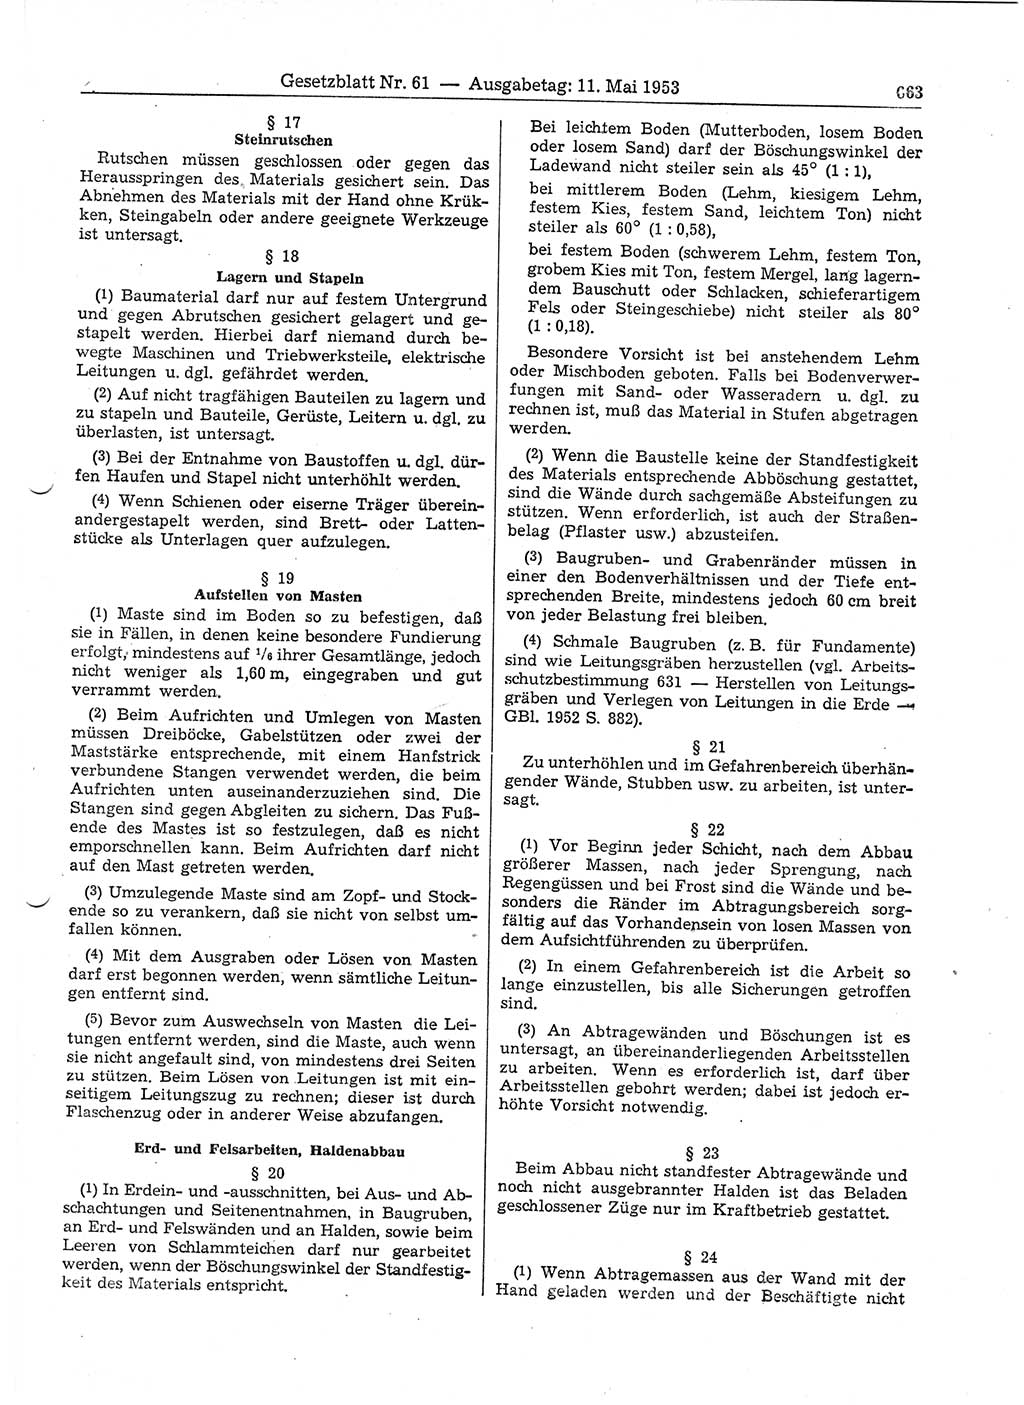 Gesetzblatt (GBl.) der Deutschen Demokratischen Republik (DDR) 1953, Seite 663 (GBl. DDR 1953, S. 663)